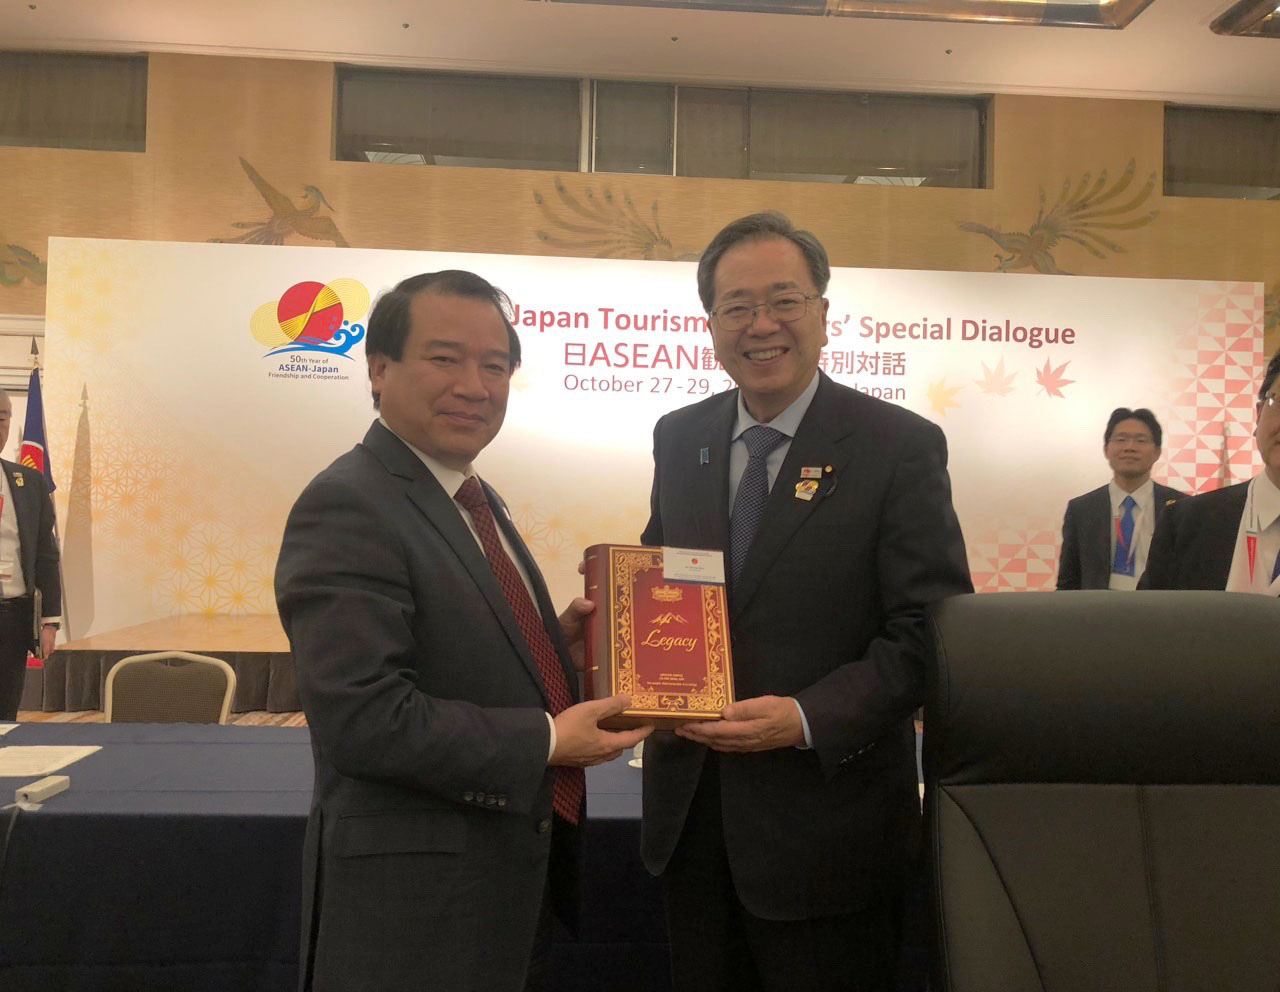 Cục Du lịch Quốc gia Việt Nam tham dự Đối thoại đặc biệt giữa Bộ trưởng Du lịch ASEAN - Nhật Bản - Ảnh 7.